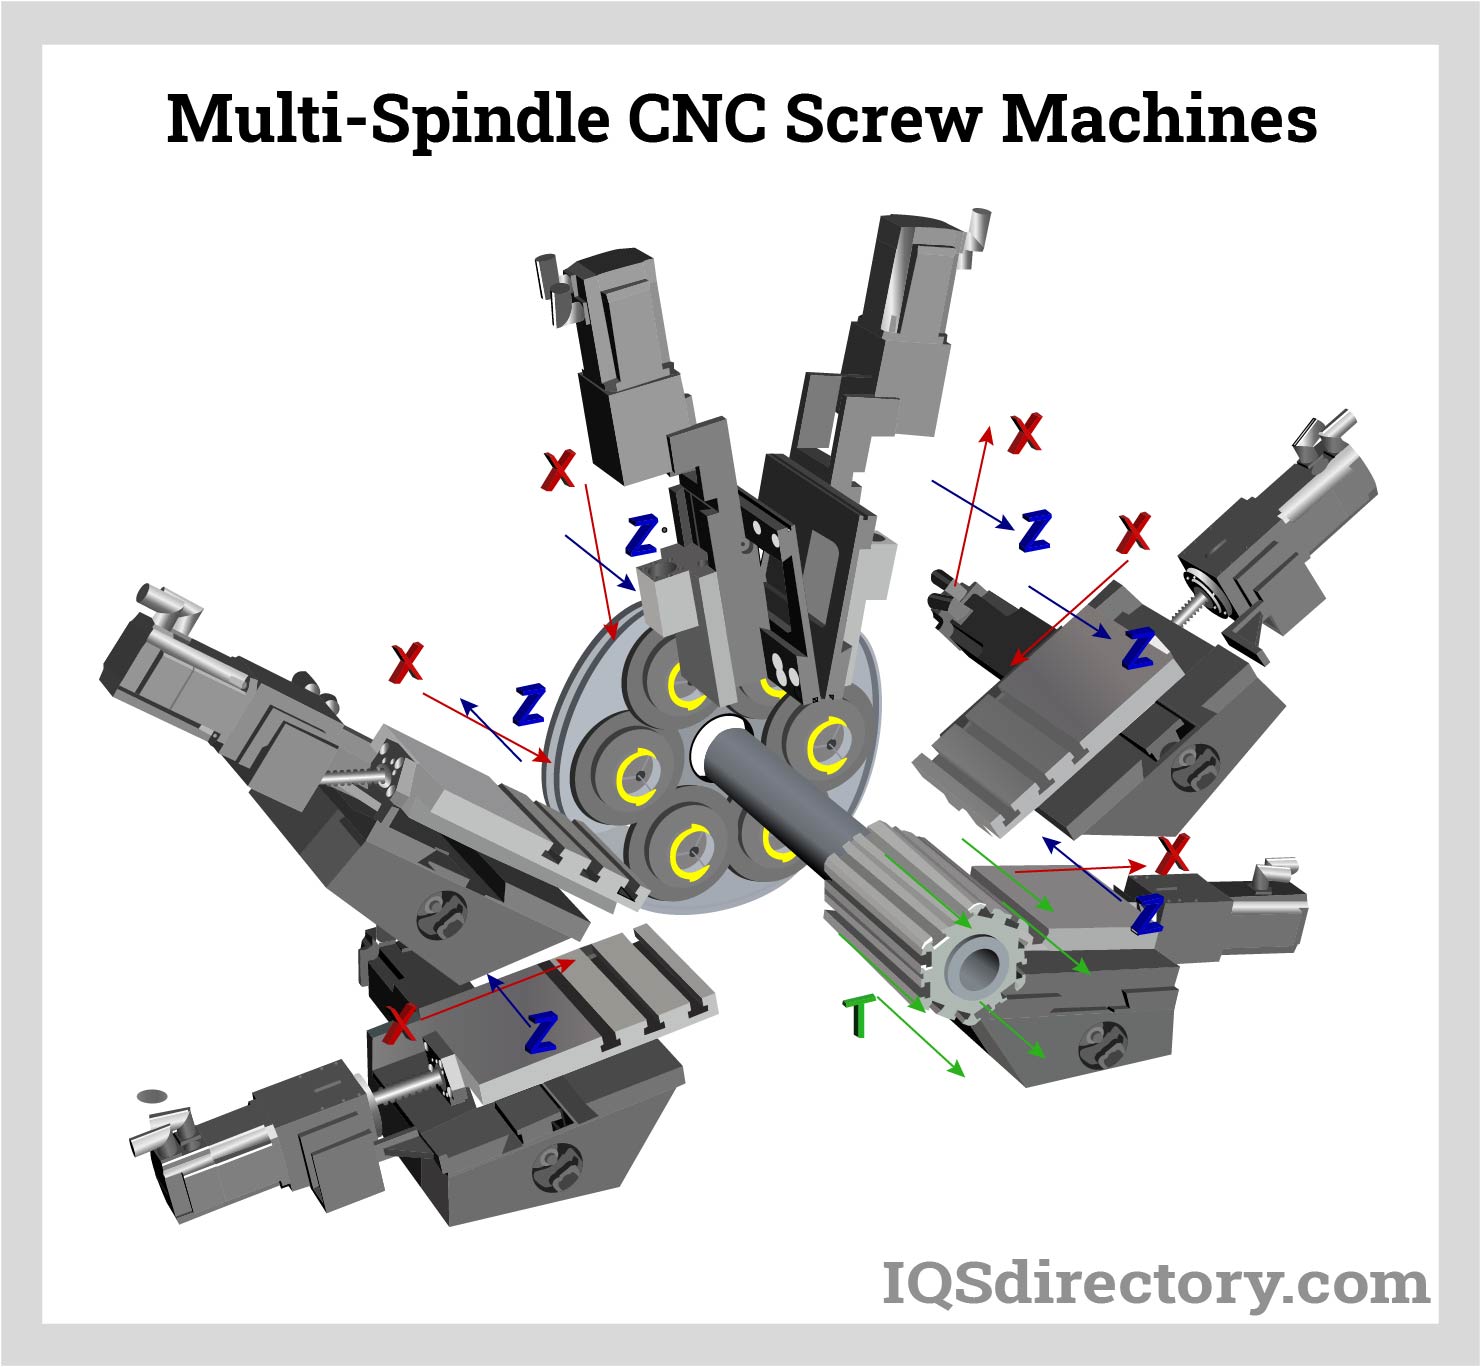 Multi-Spindle CNC Screw Machines